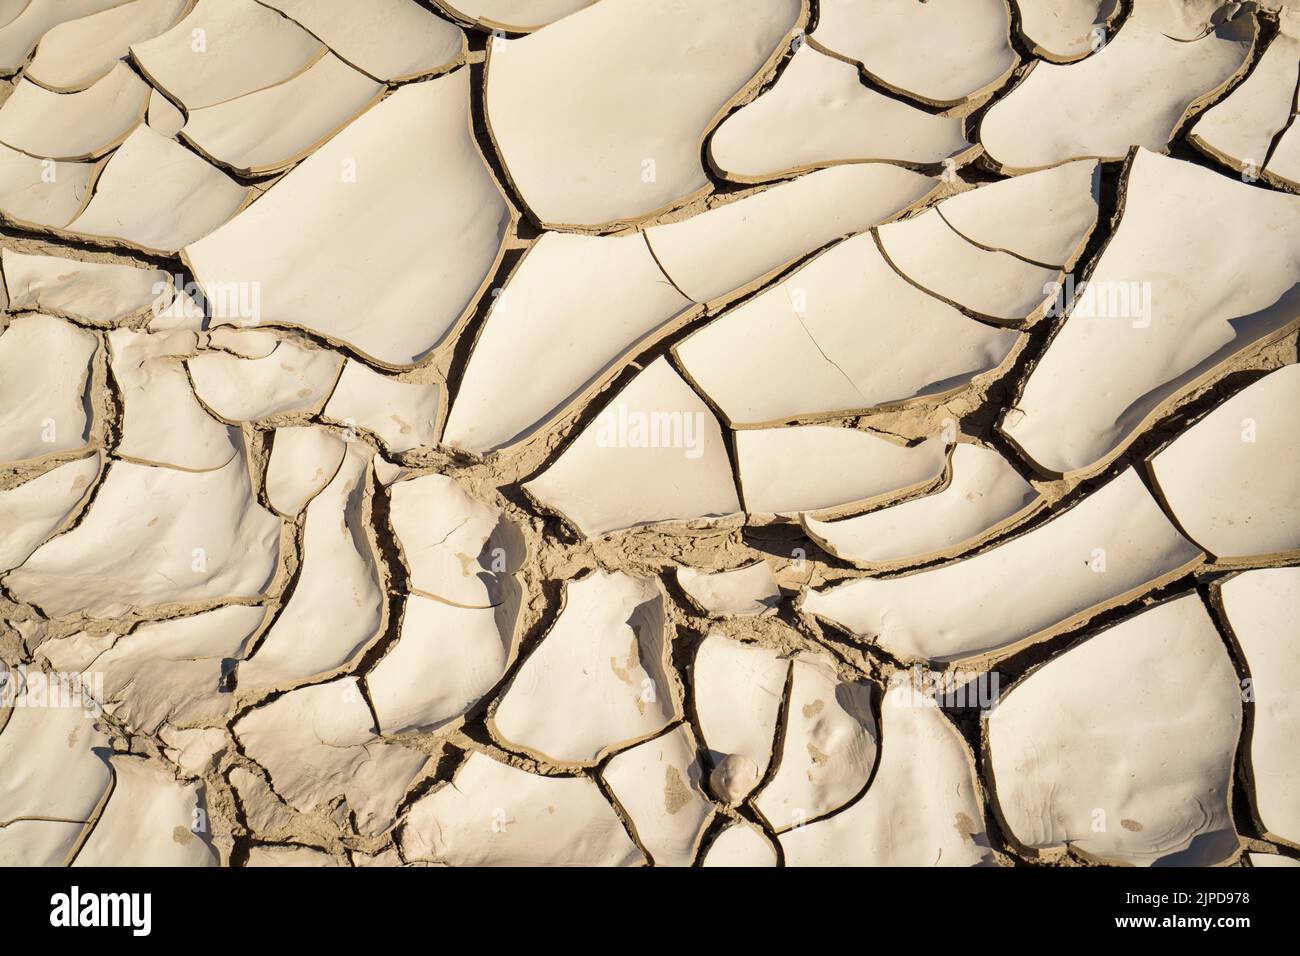 Motifs en argile dans un lit de rivière sec, changement climatique symbolique. Rivière Swakop, Namibie, Afrique Banque D'Images